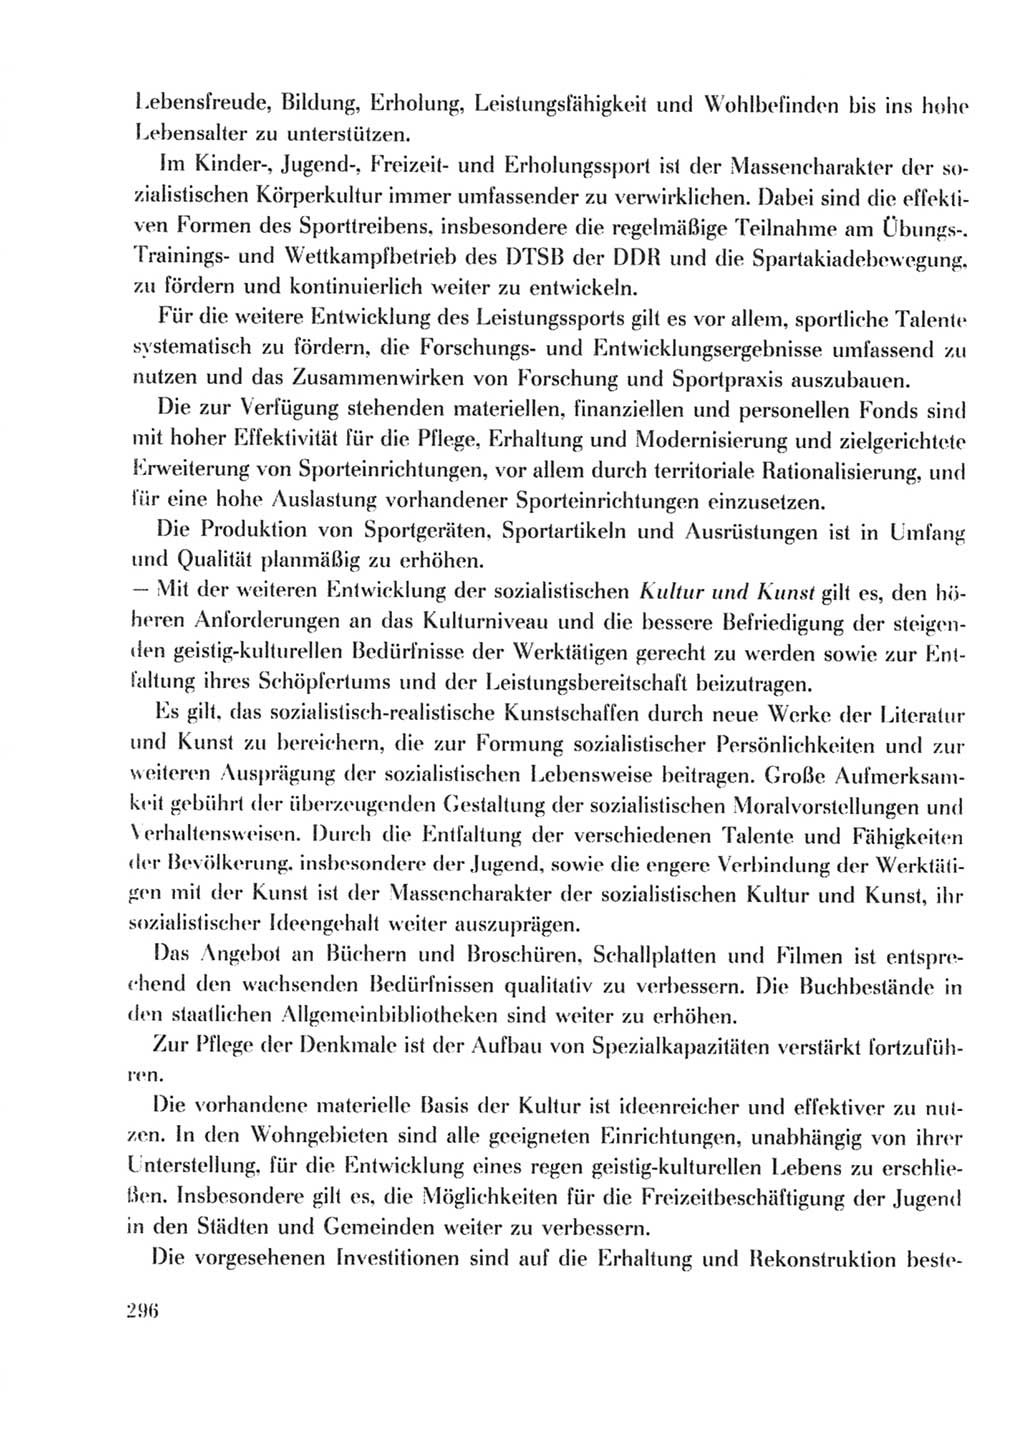 Protokoll der Verhandlungen des Ⅹ. Parteitages der Sozialistischen Einheitspartei Deutschlands (SED) [Deutsche Demokratische Republik (DDR)] 1981, Band 2, Seite 296 (Prot. Verh. Ⅹ. PT SED DDR 1981, Bd. 2, S. 296)